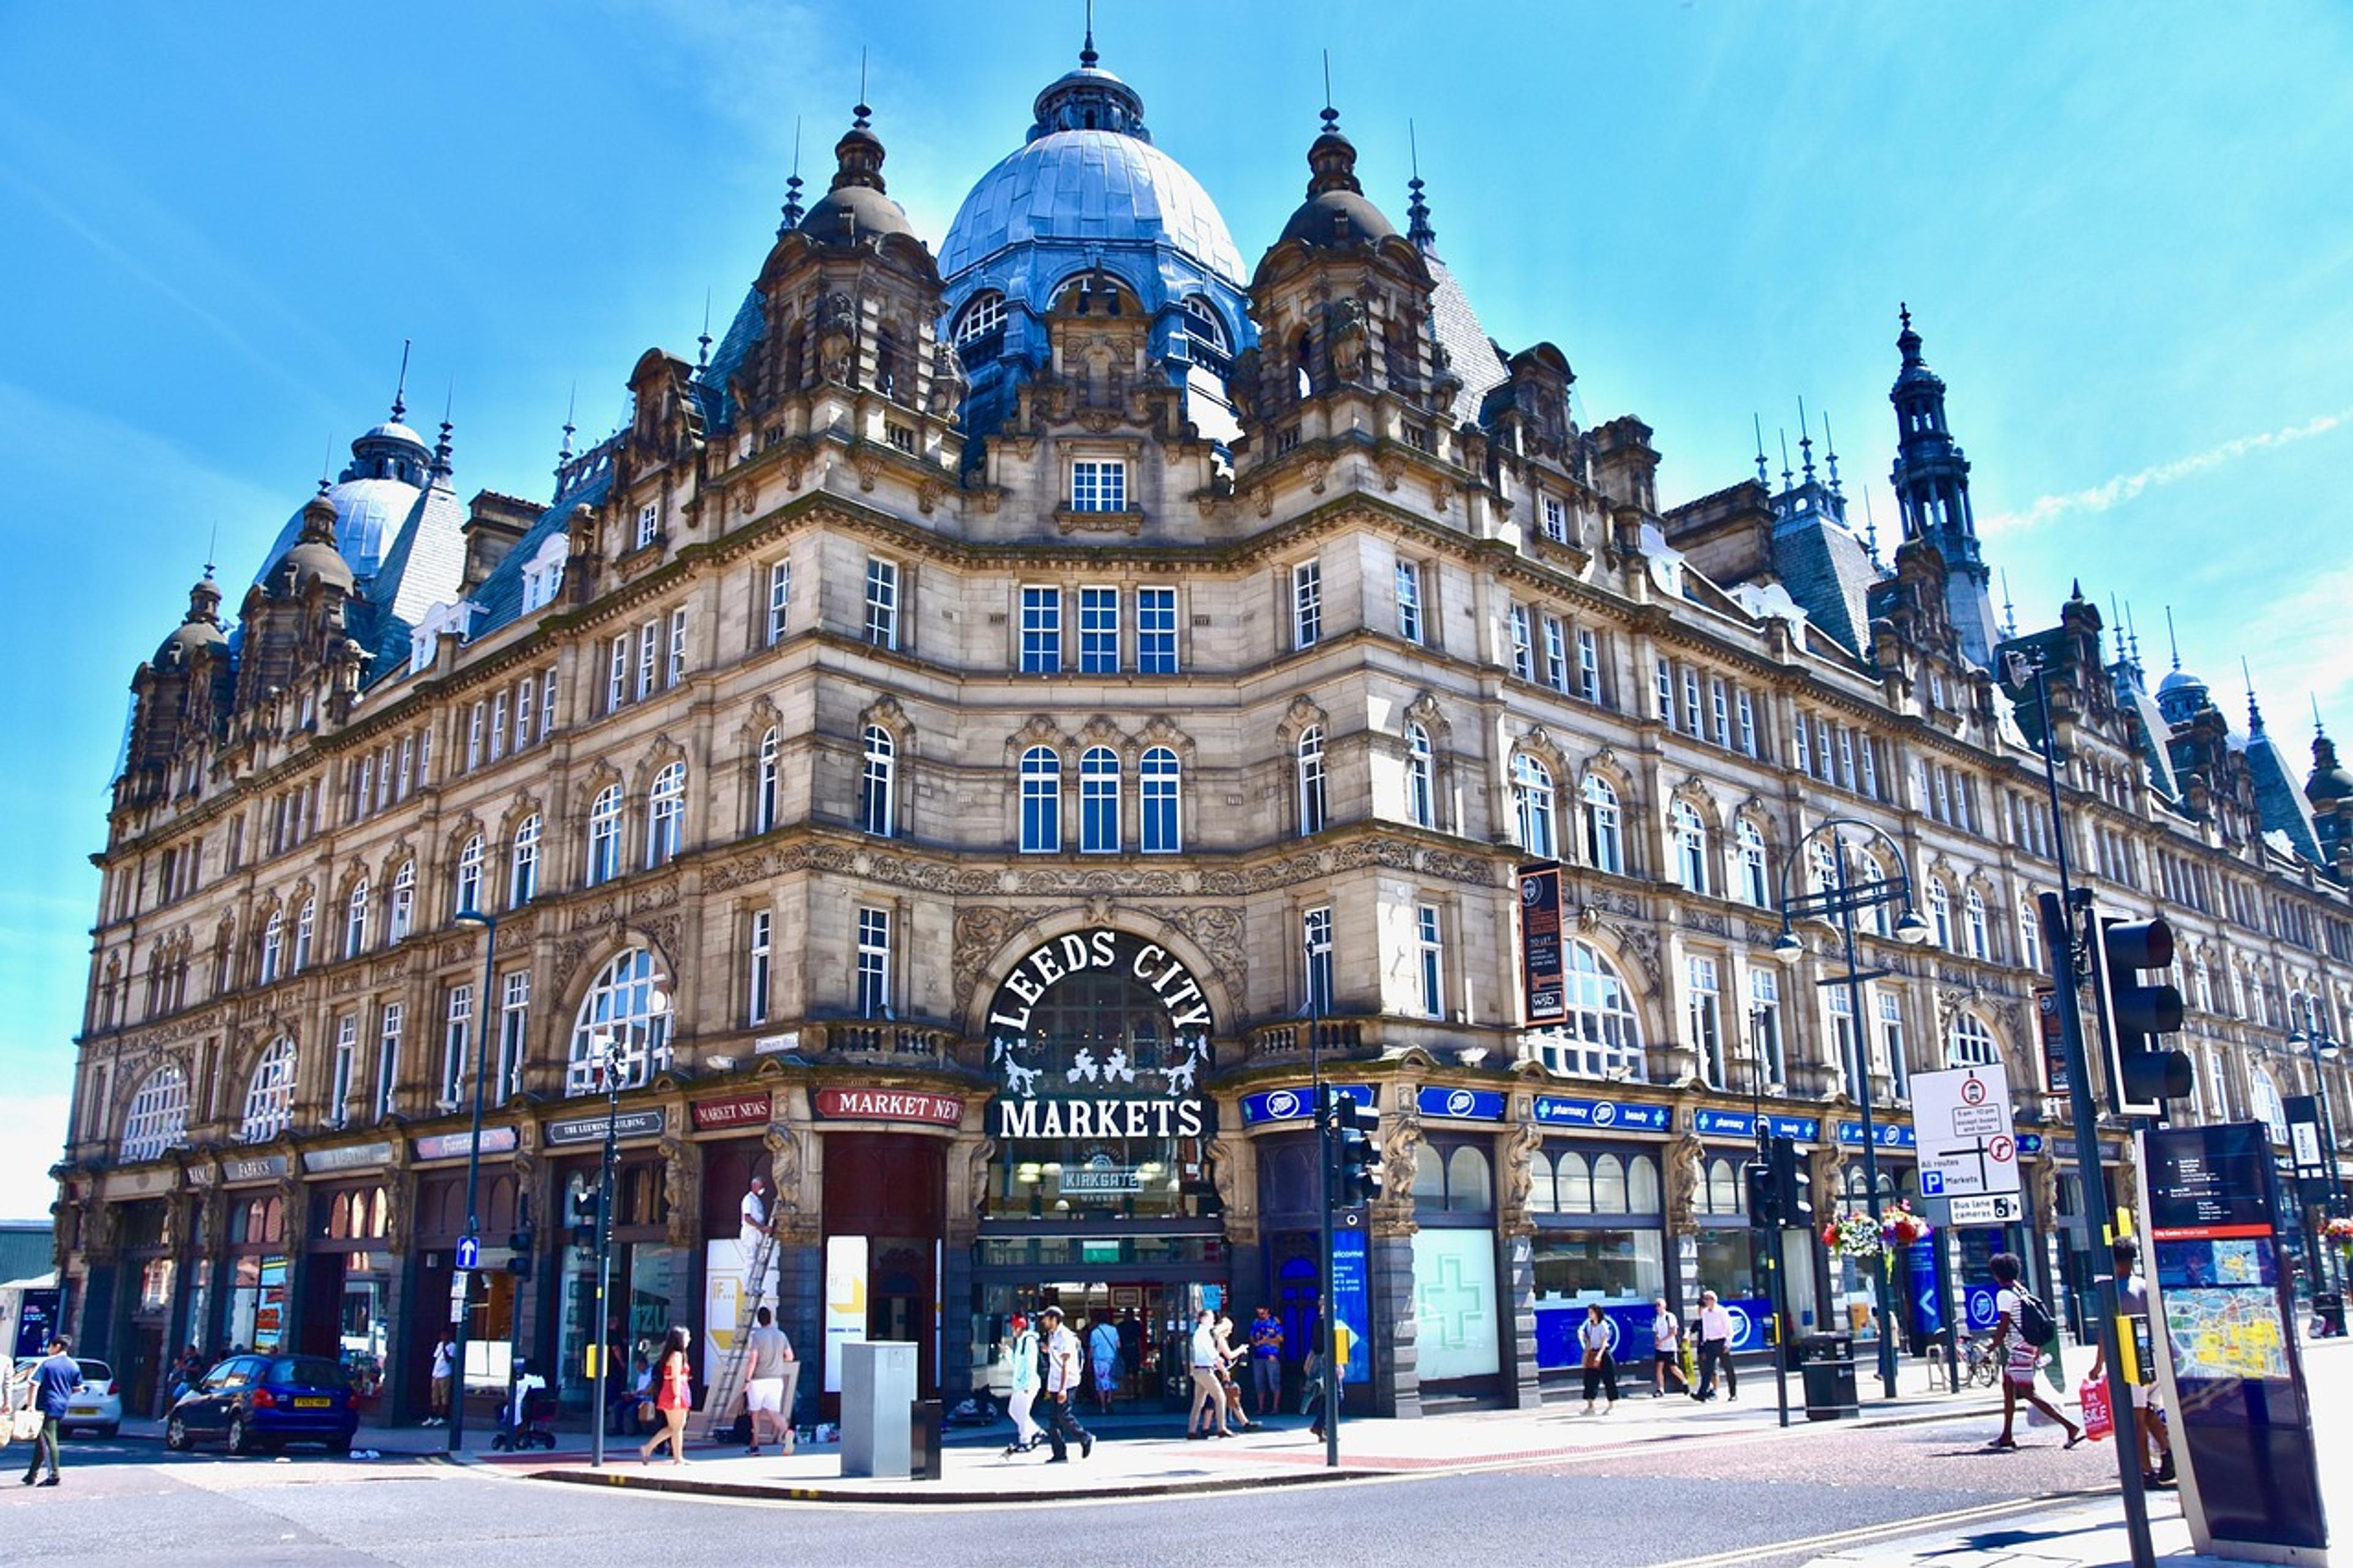 Best Hotels in Leeds